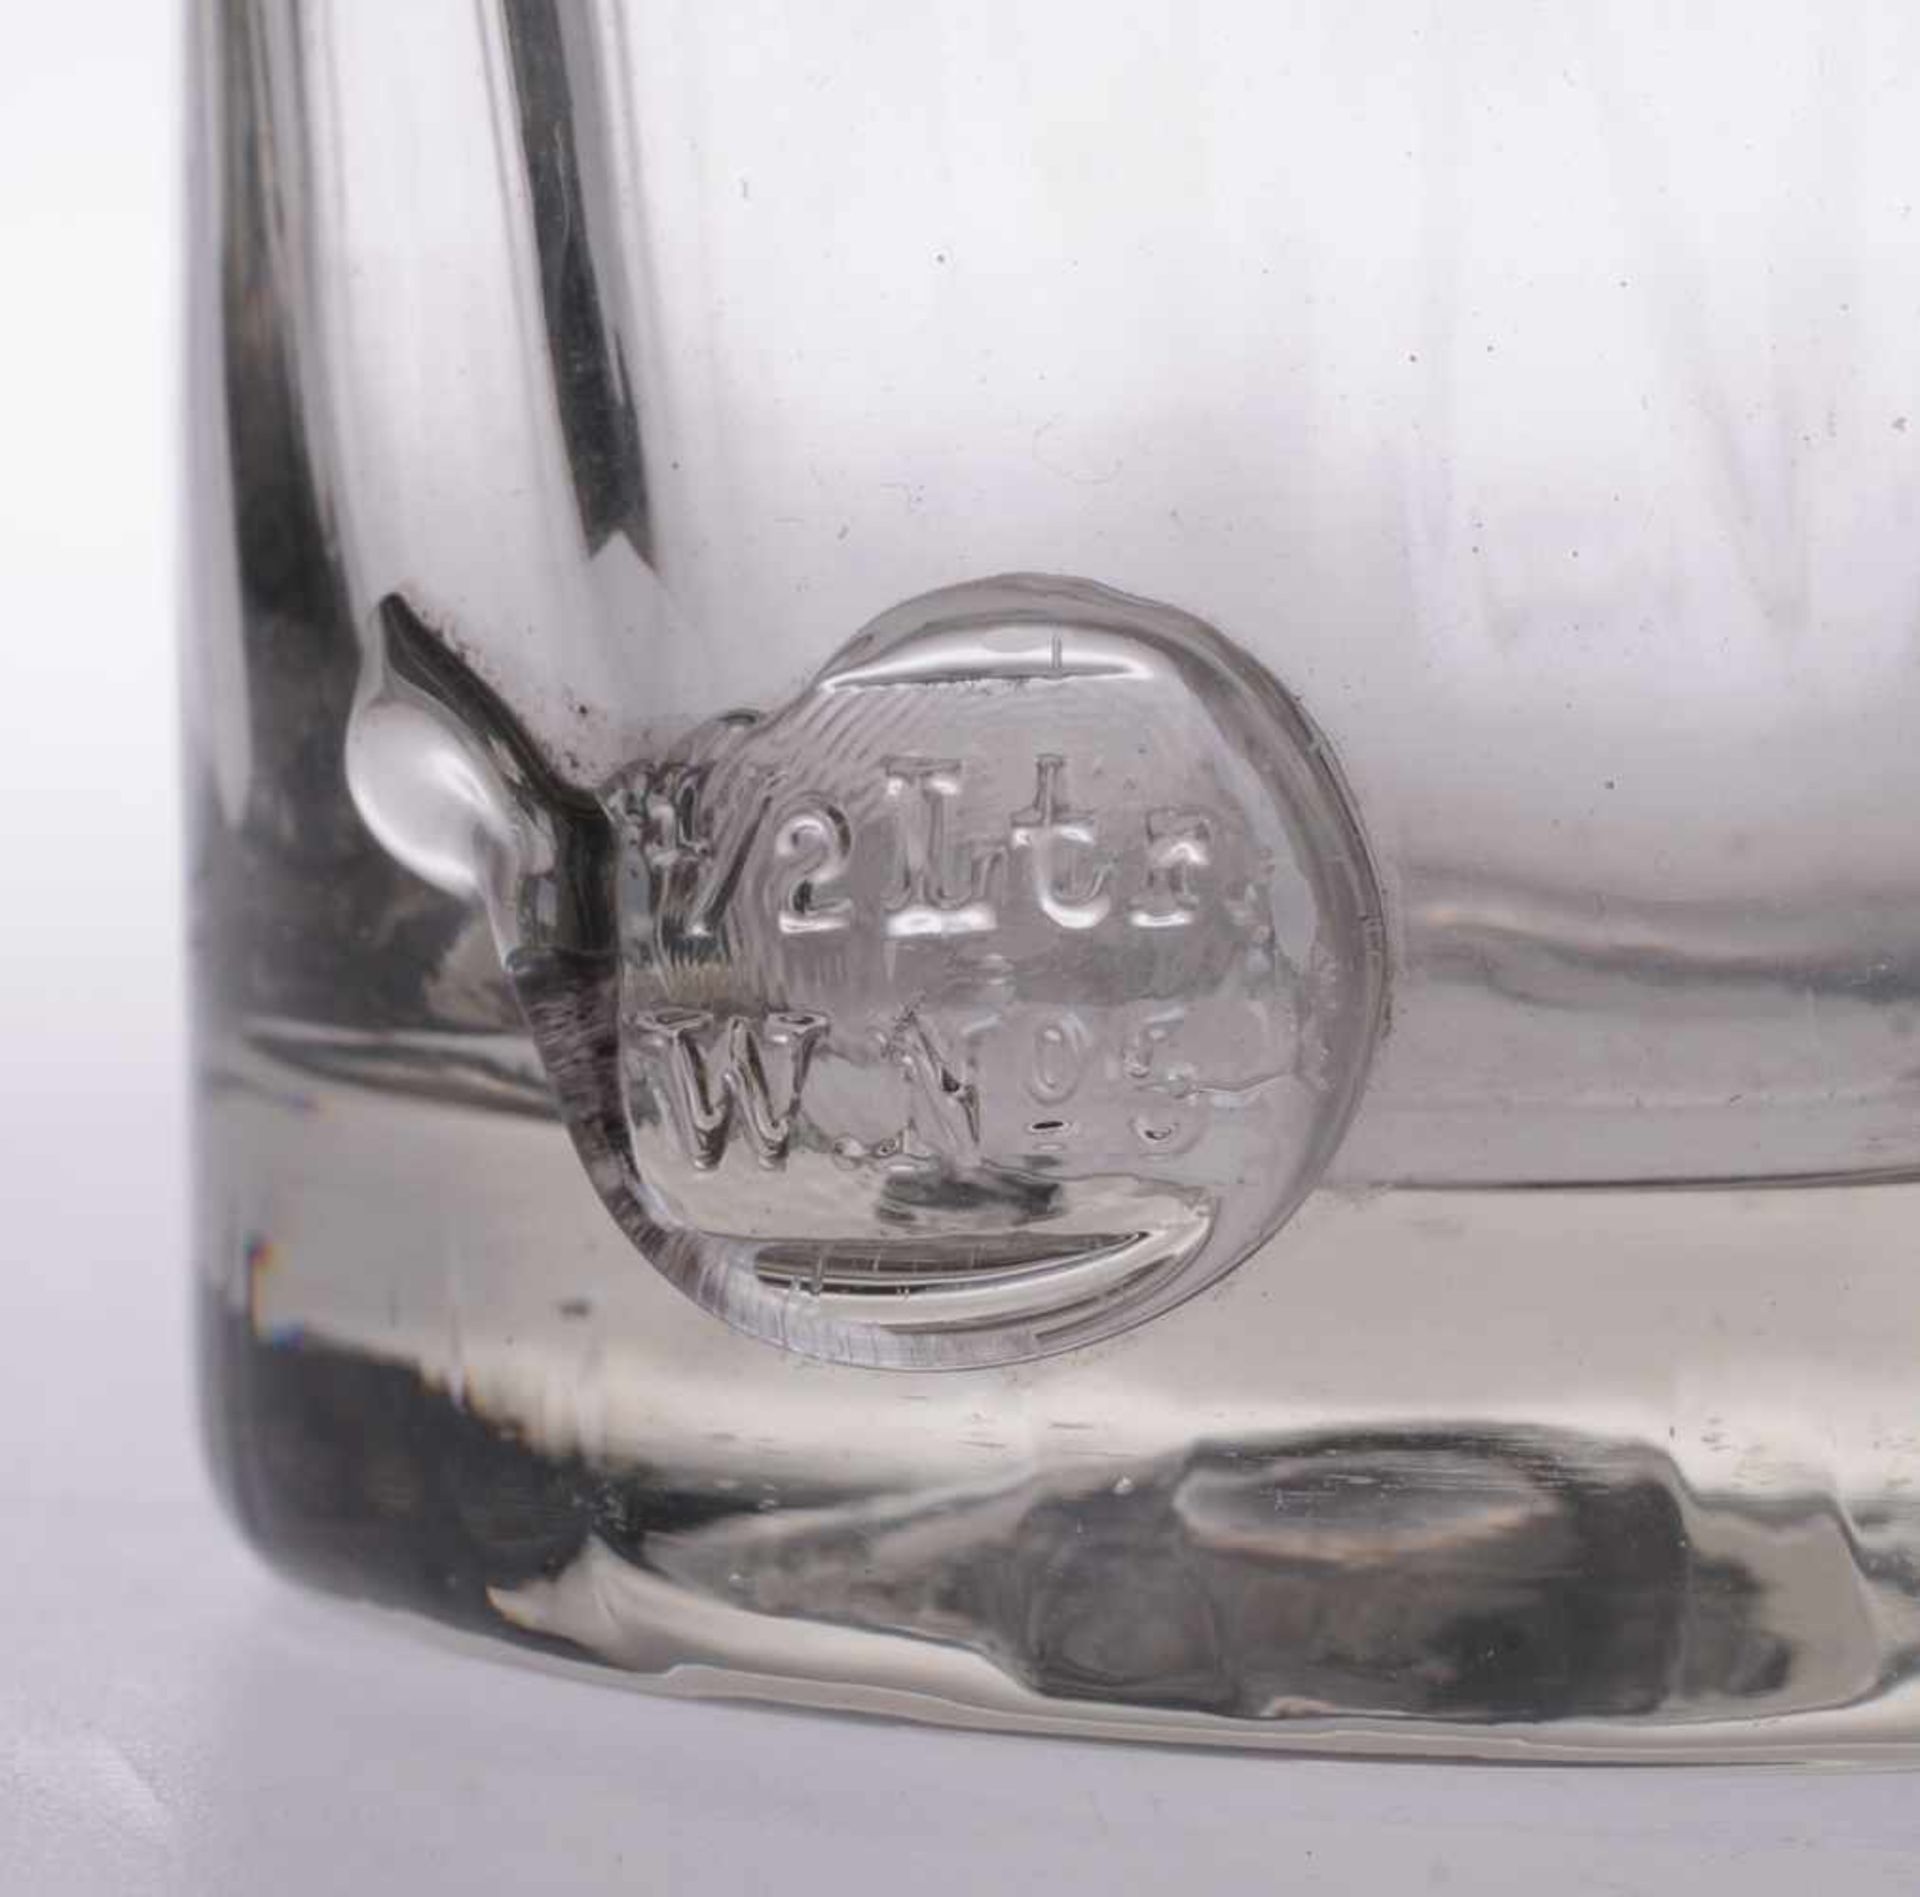 Wasserglas Farbloses Glas. Optisch gerippt formgeblasen. Zylindrischer Korpus. Geätzter - Bild 2 aus 2